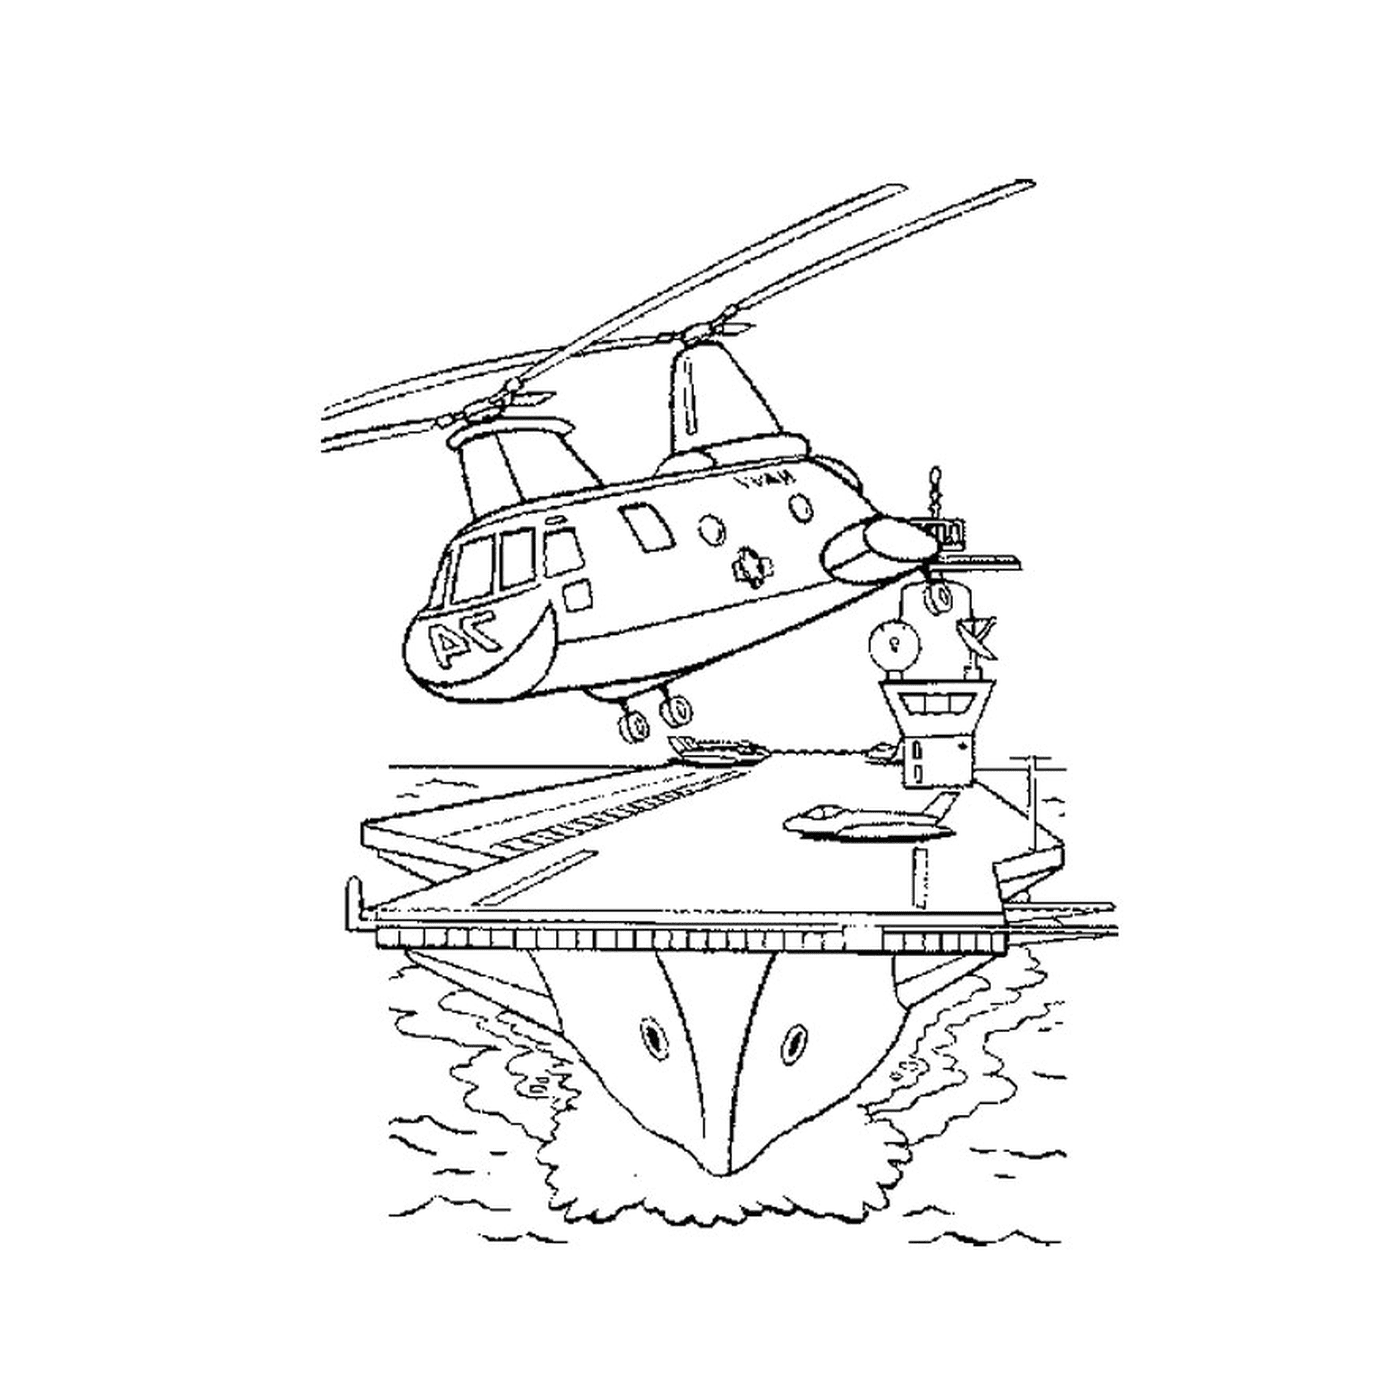  Военный катер с вертолетом, летевшим над авианосцем 